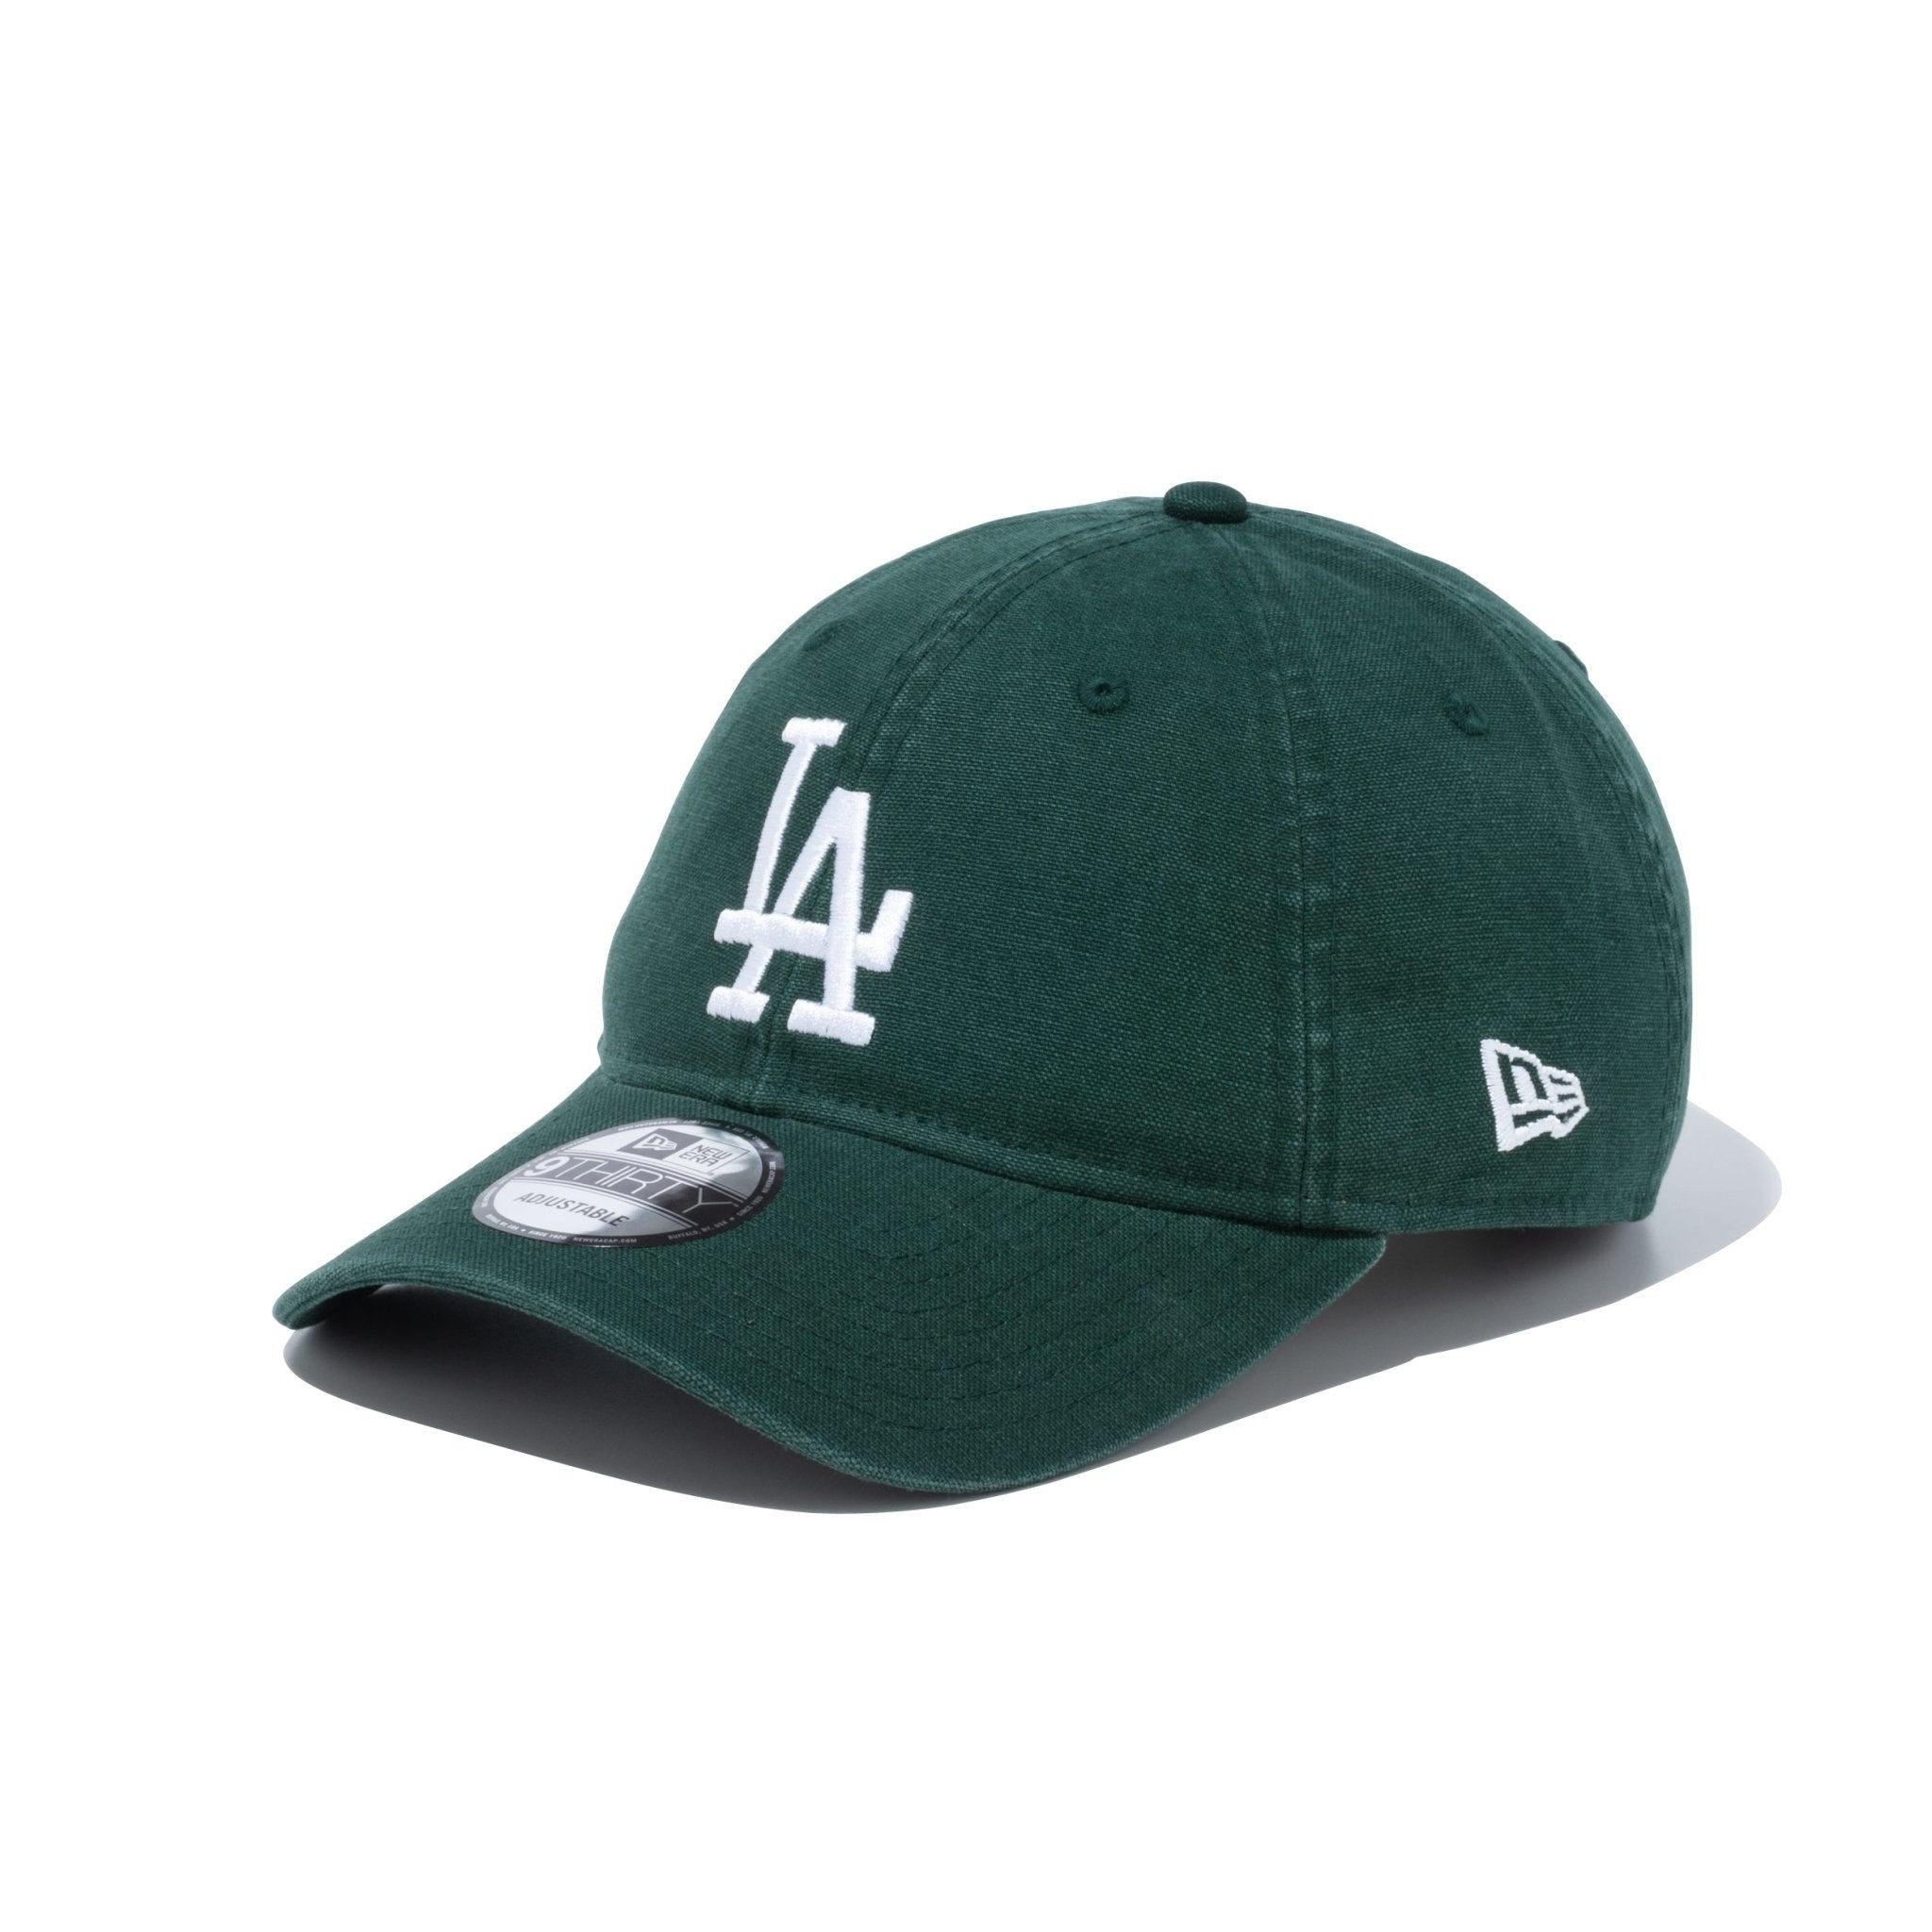 独特な店 MLB Era 旧タグNew 80s 激レア ツバ裏グリーン パドレス 帽子 